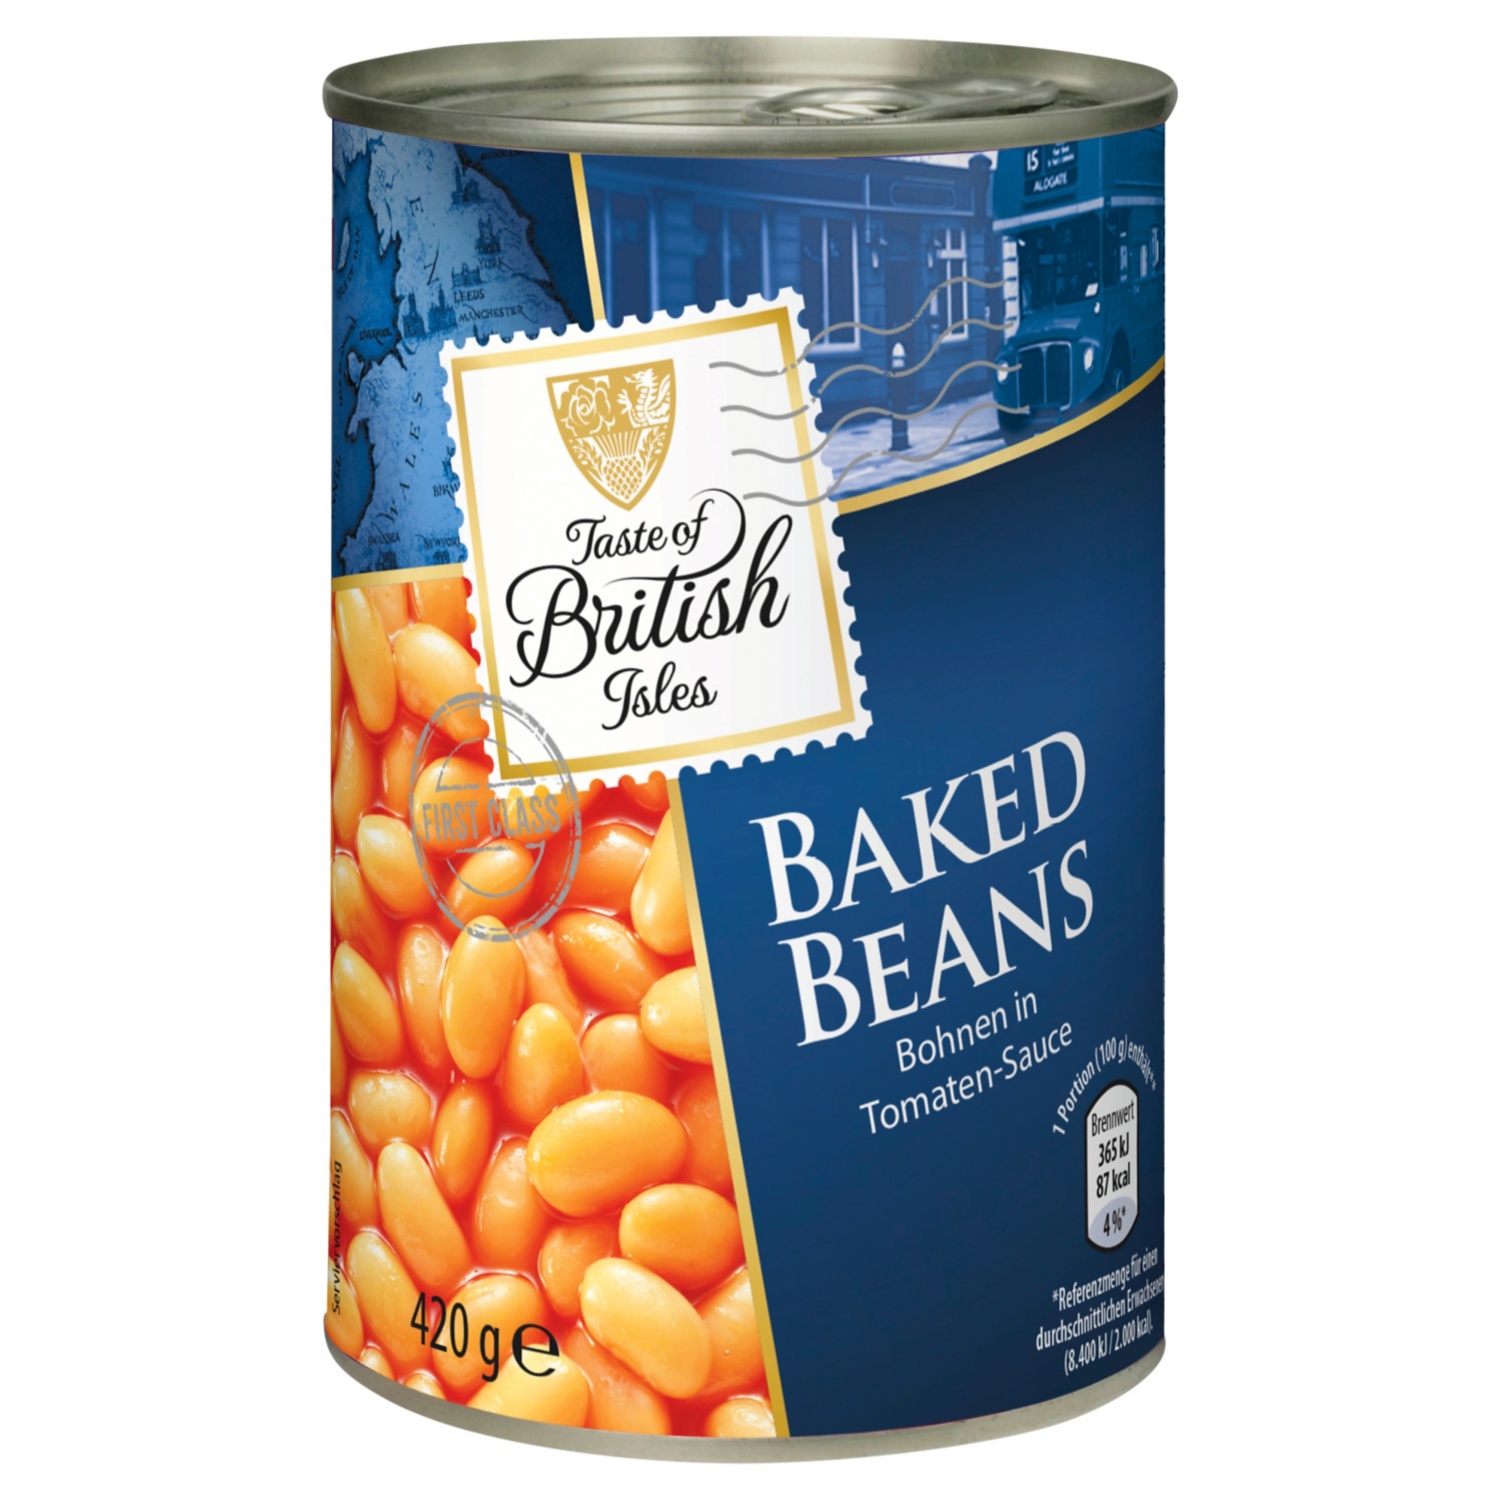 Taste of British Isles Baked Beans 420 g